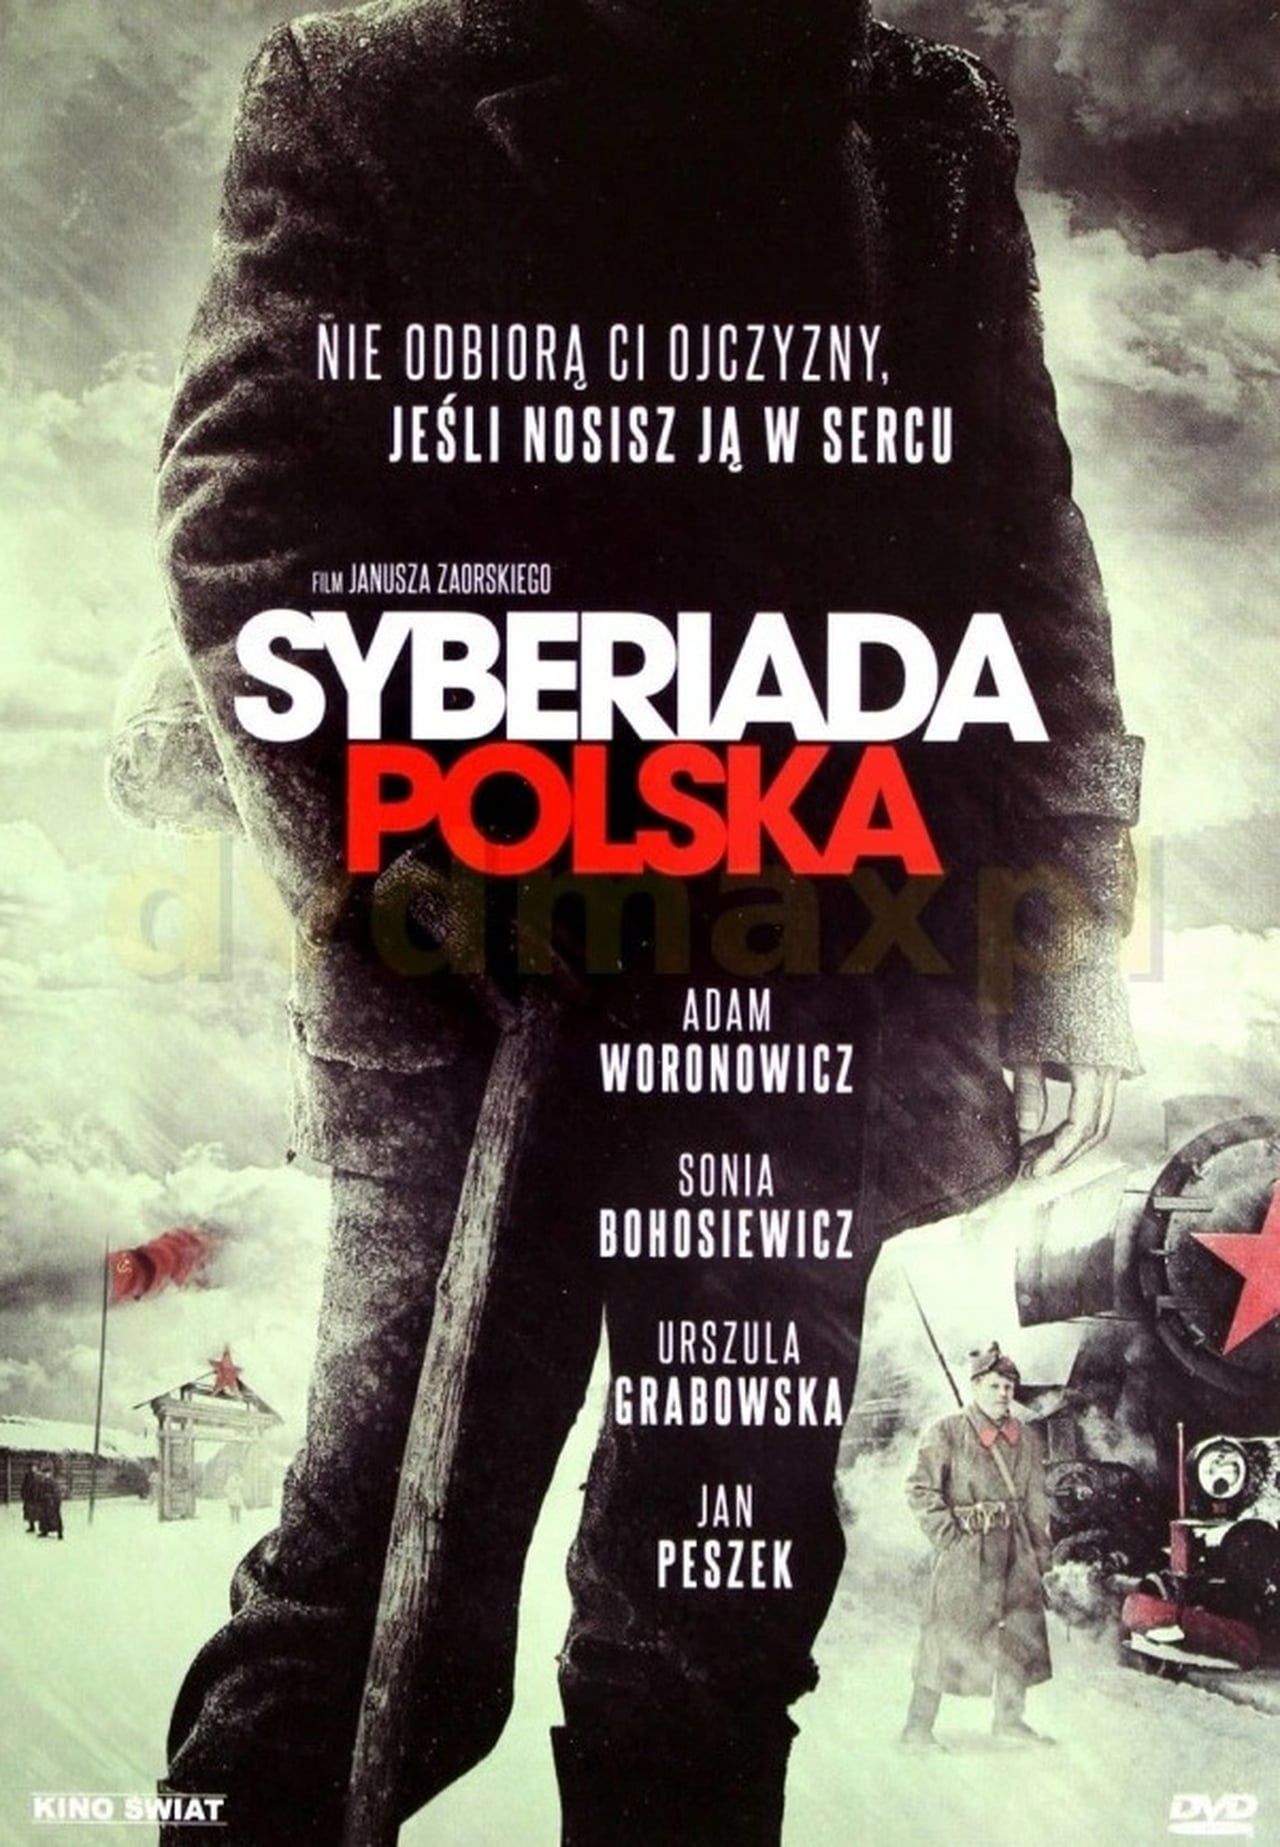 Полска сибириада (2013)